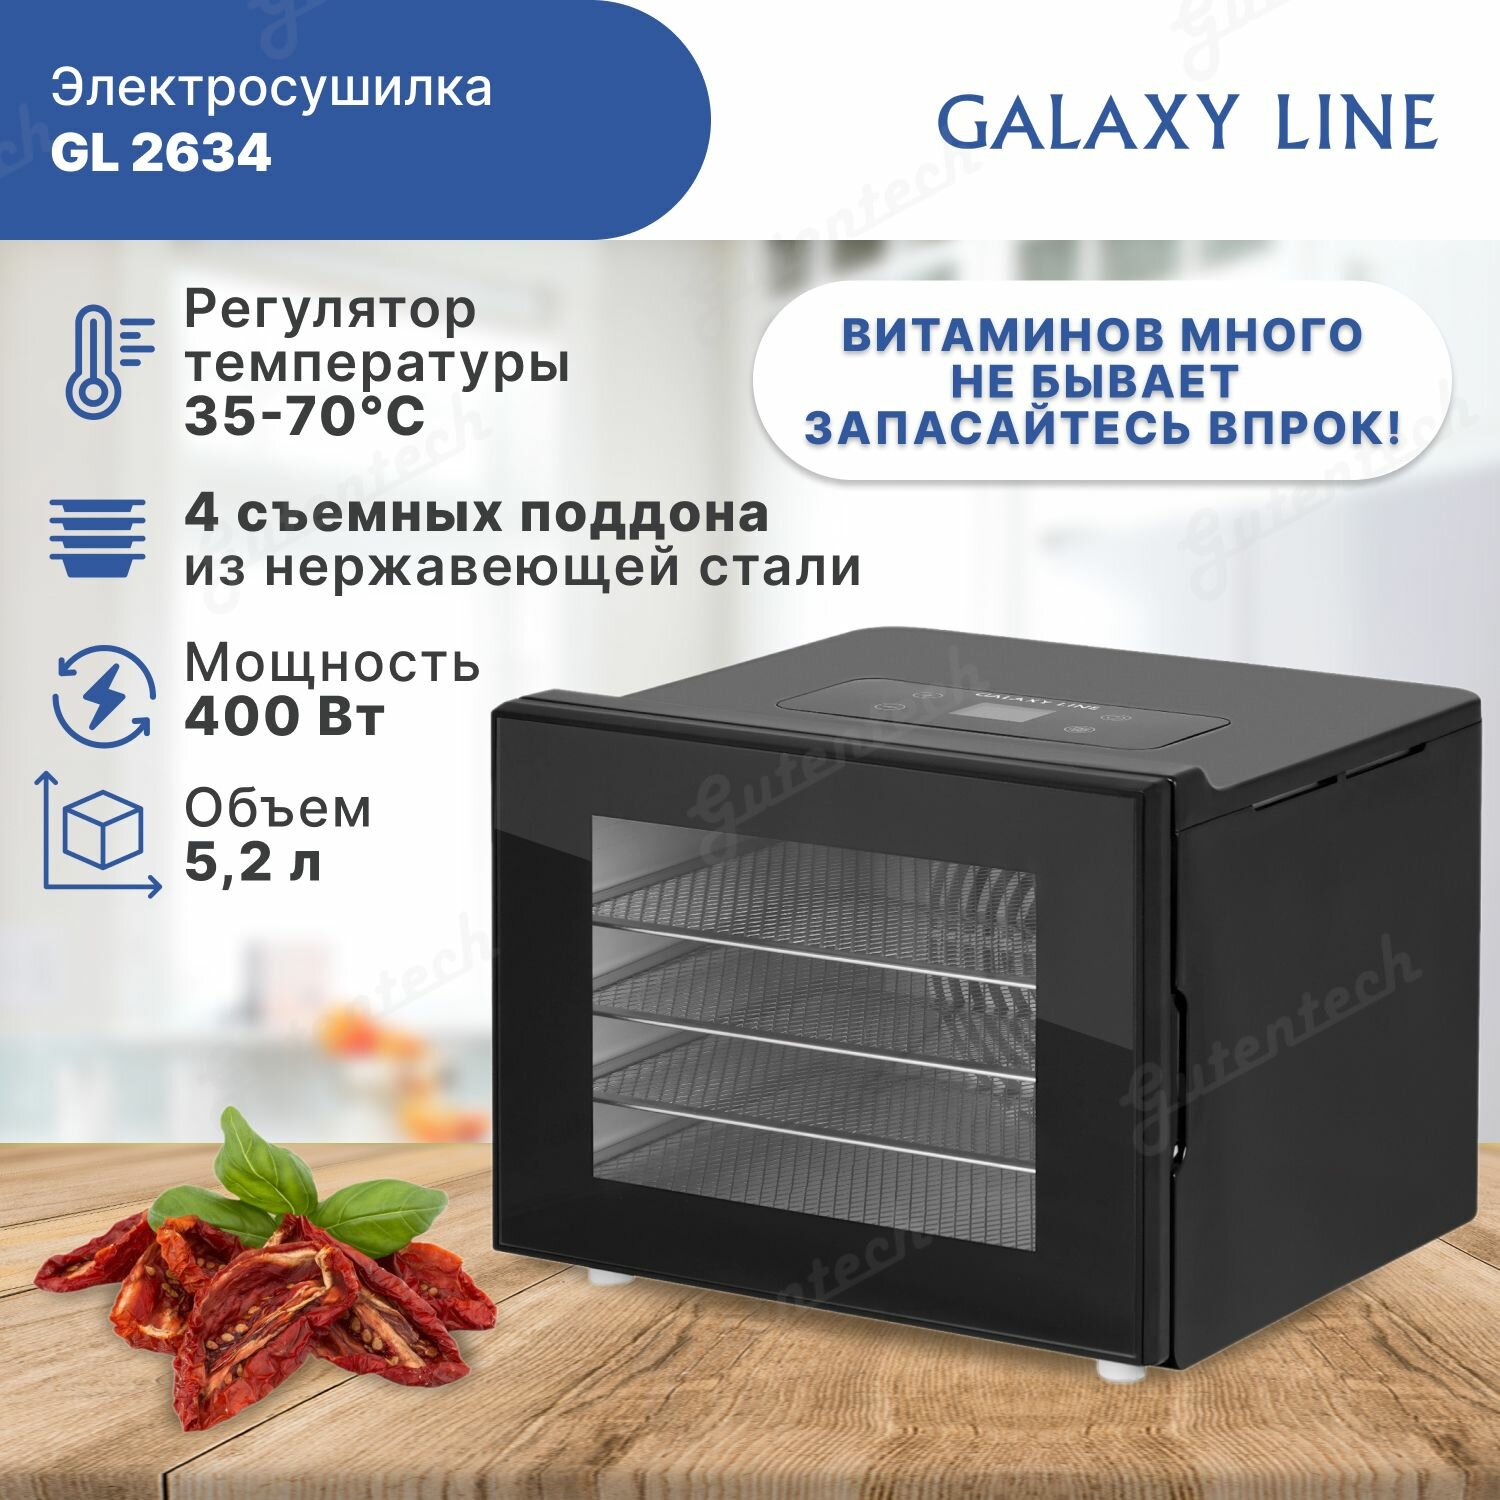 Электросушилка для овощей и фруктов Galaxy LINE GL2634, 400 Вт, регулятор температуры, 4 поддона